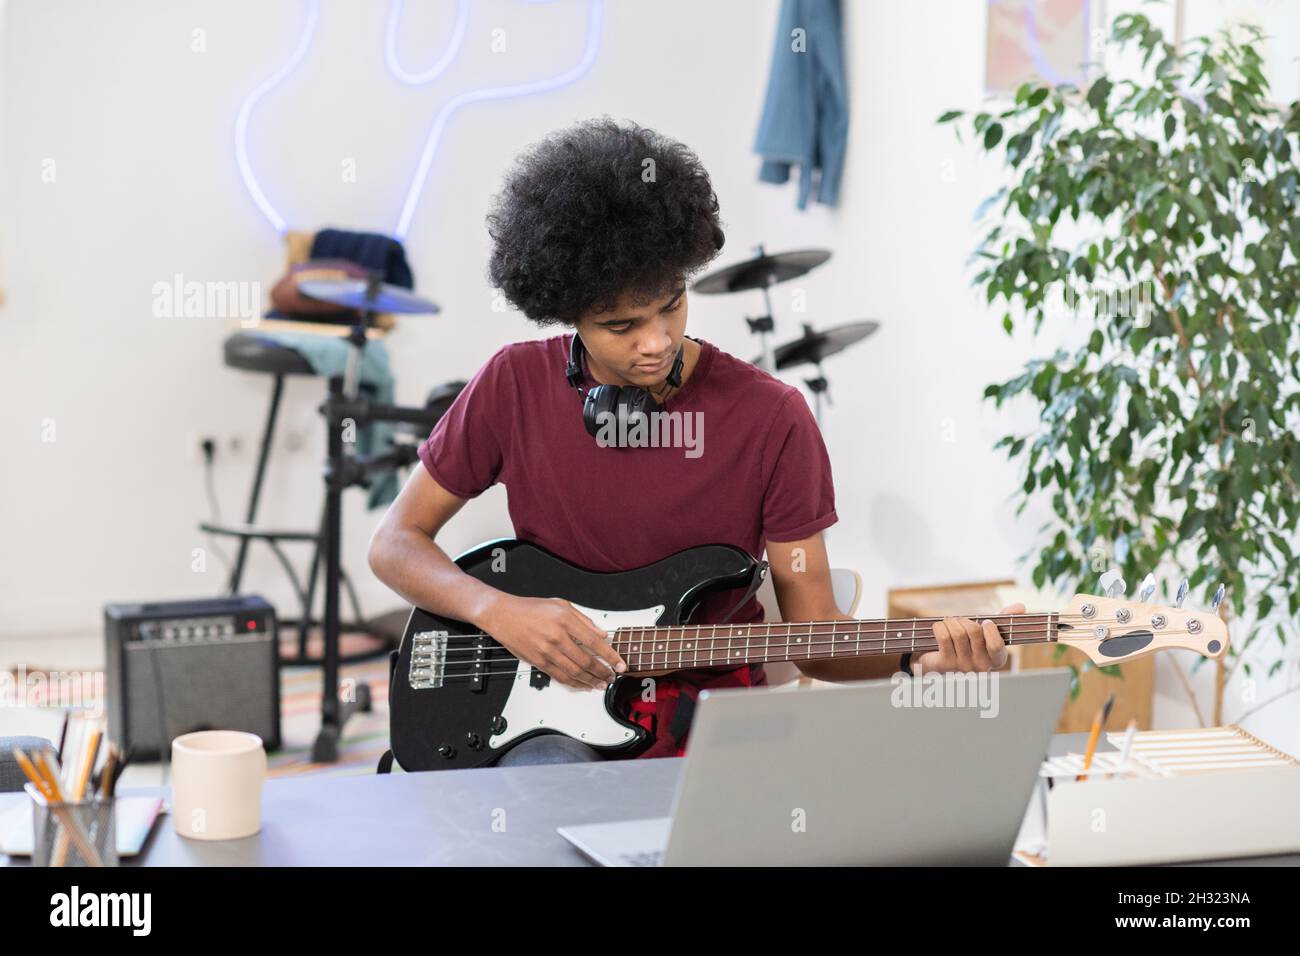 Ragazzo diligente che suona la chitarra elettrica di fronte al laptop durante una lezione online o una masterclass in ambiente domestico Foto Stock